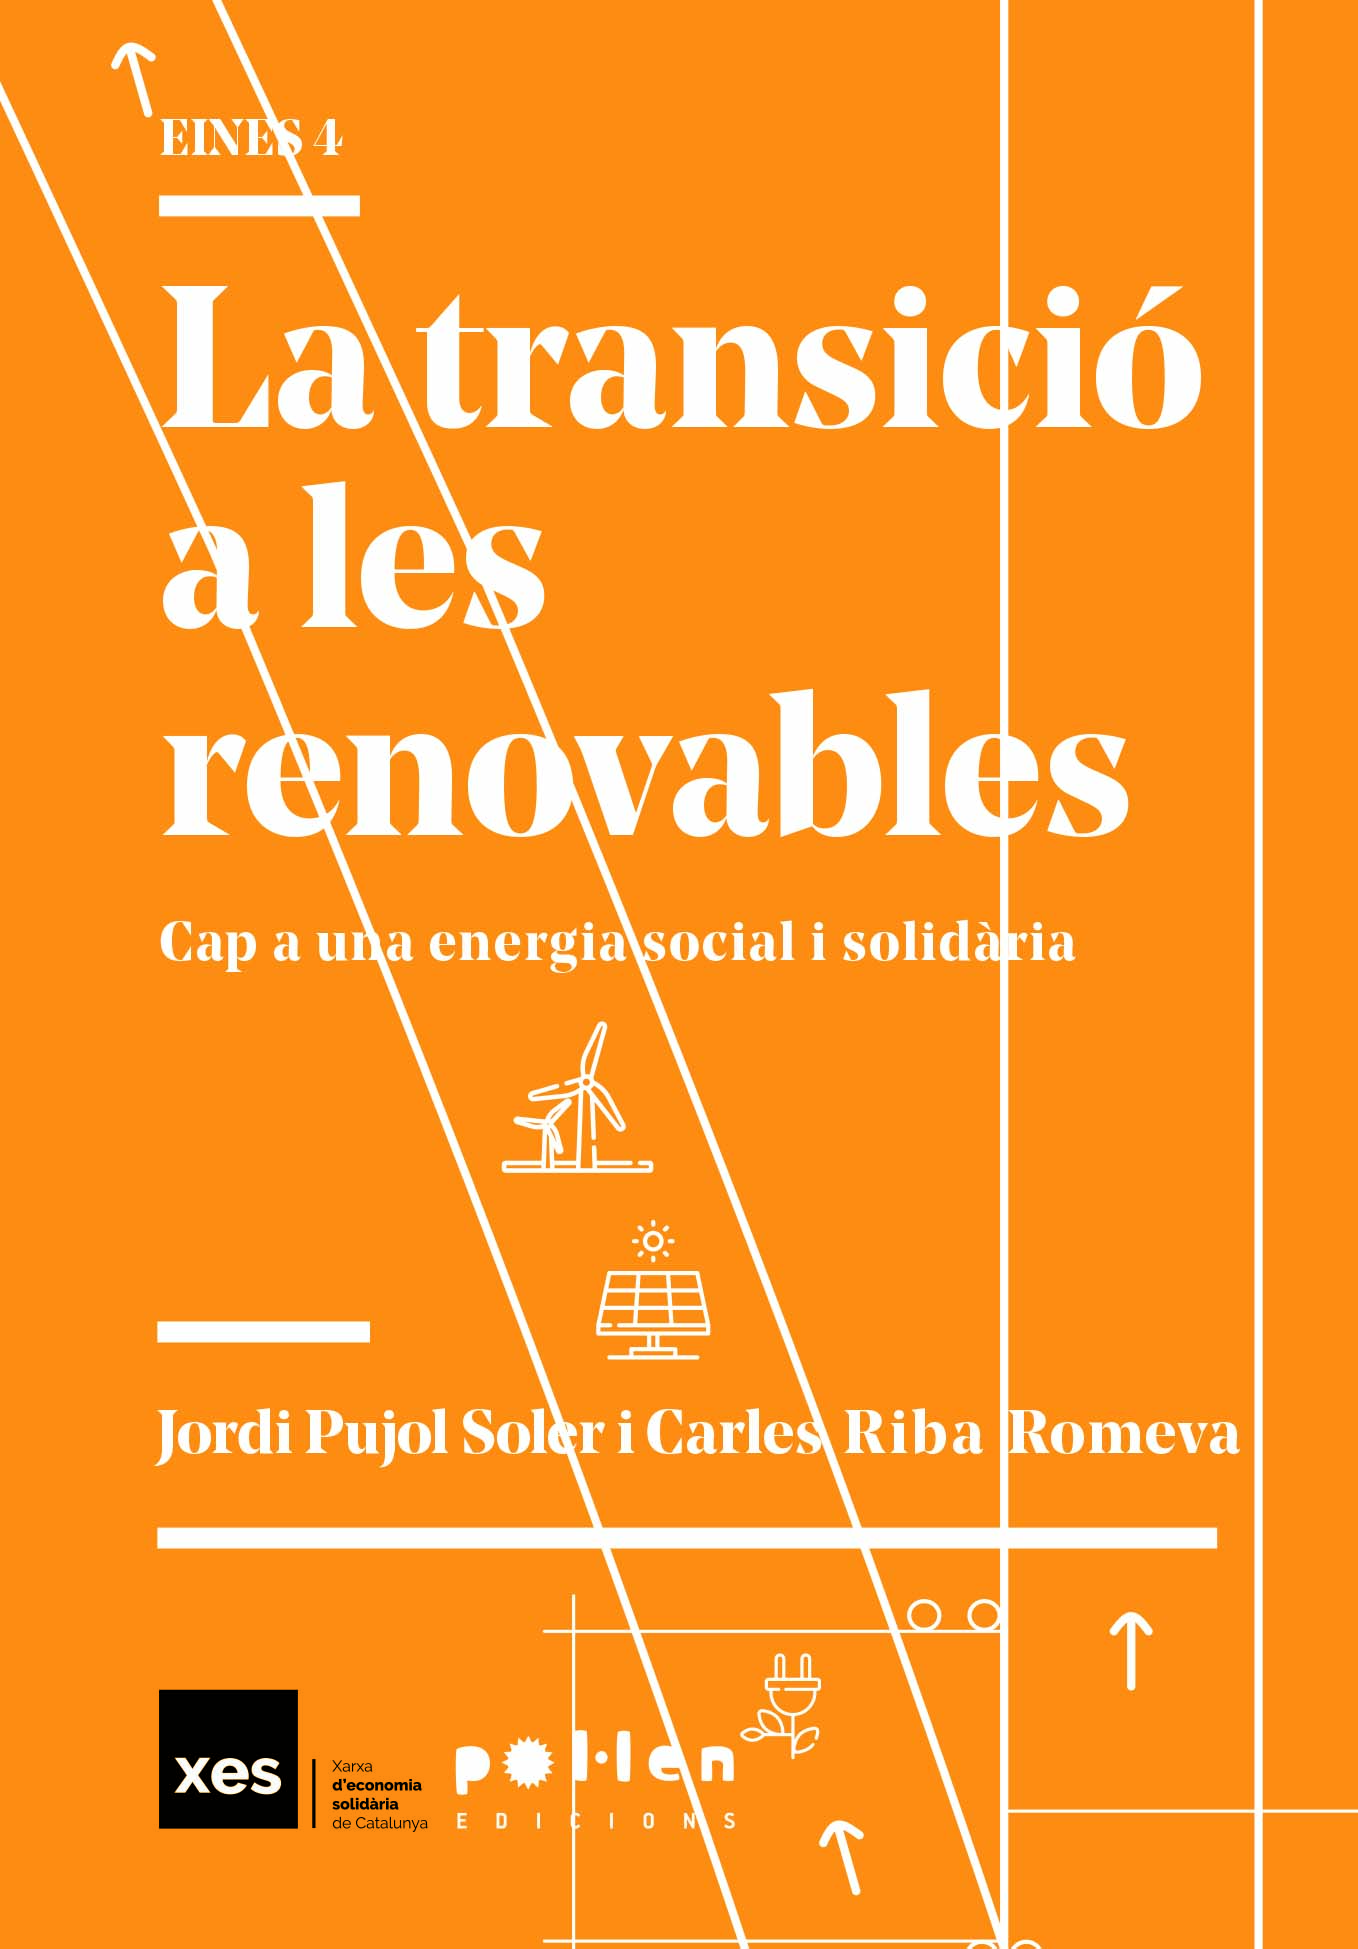 La transició a les renovables - Jordi Pujol Soler i Carles Riba Romeva